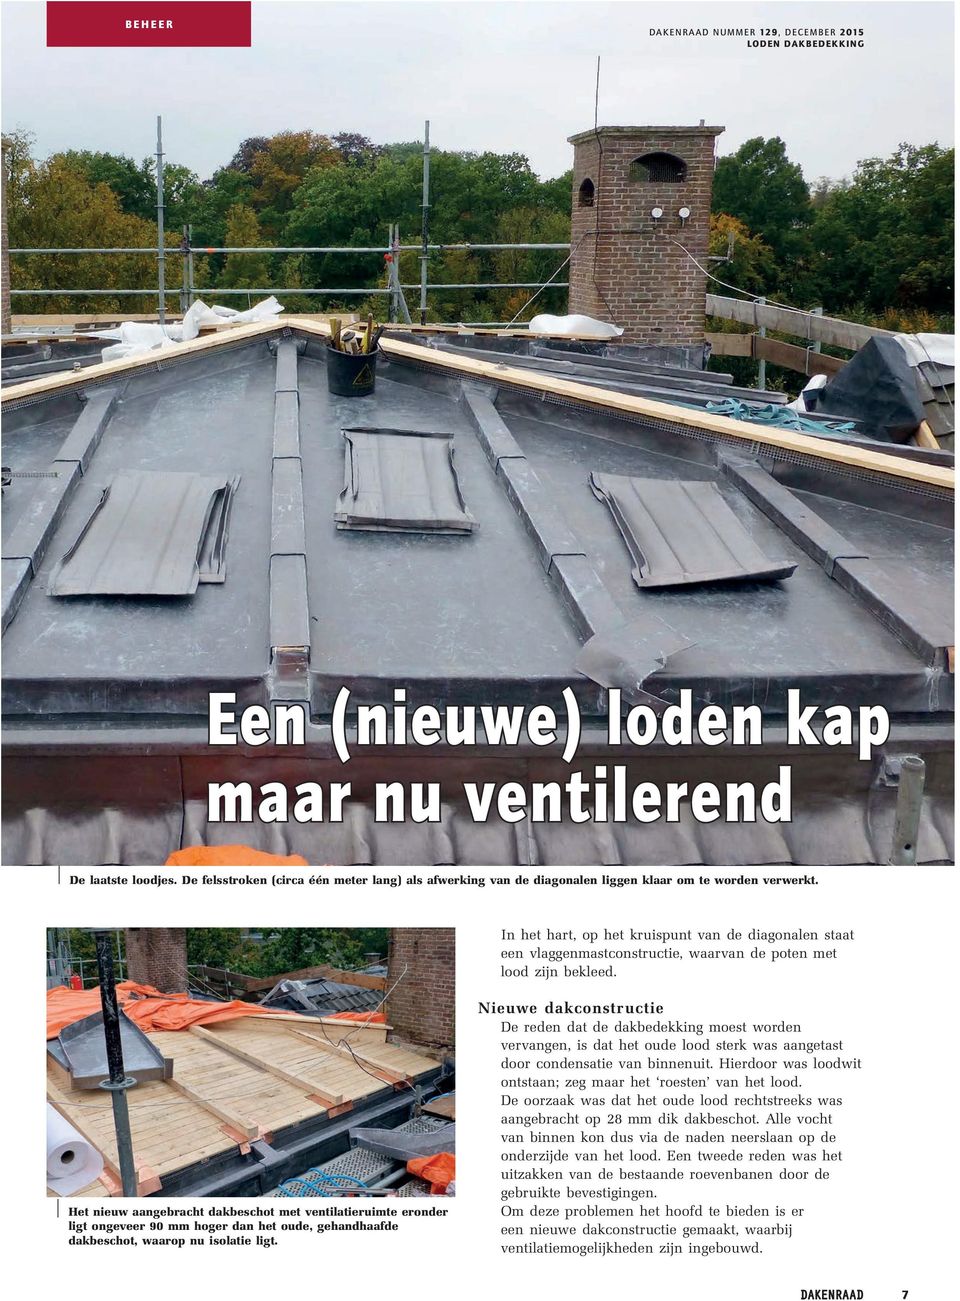 Het nieuw aangebracht dakbeschot met ventilatieruimte eronder ligt ongeveer 90 mm hoger dan het oude, gehandhaafde dakbeschot, waarop nu isolatie ligt.